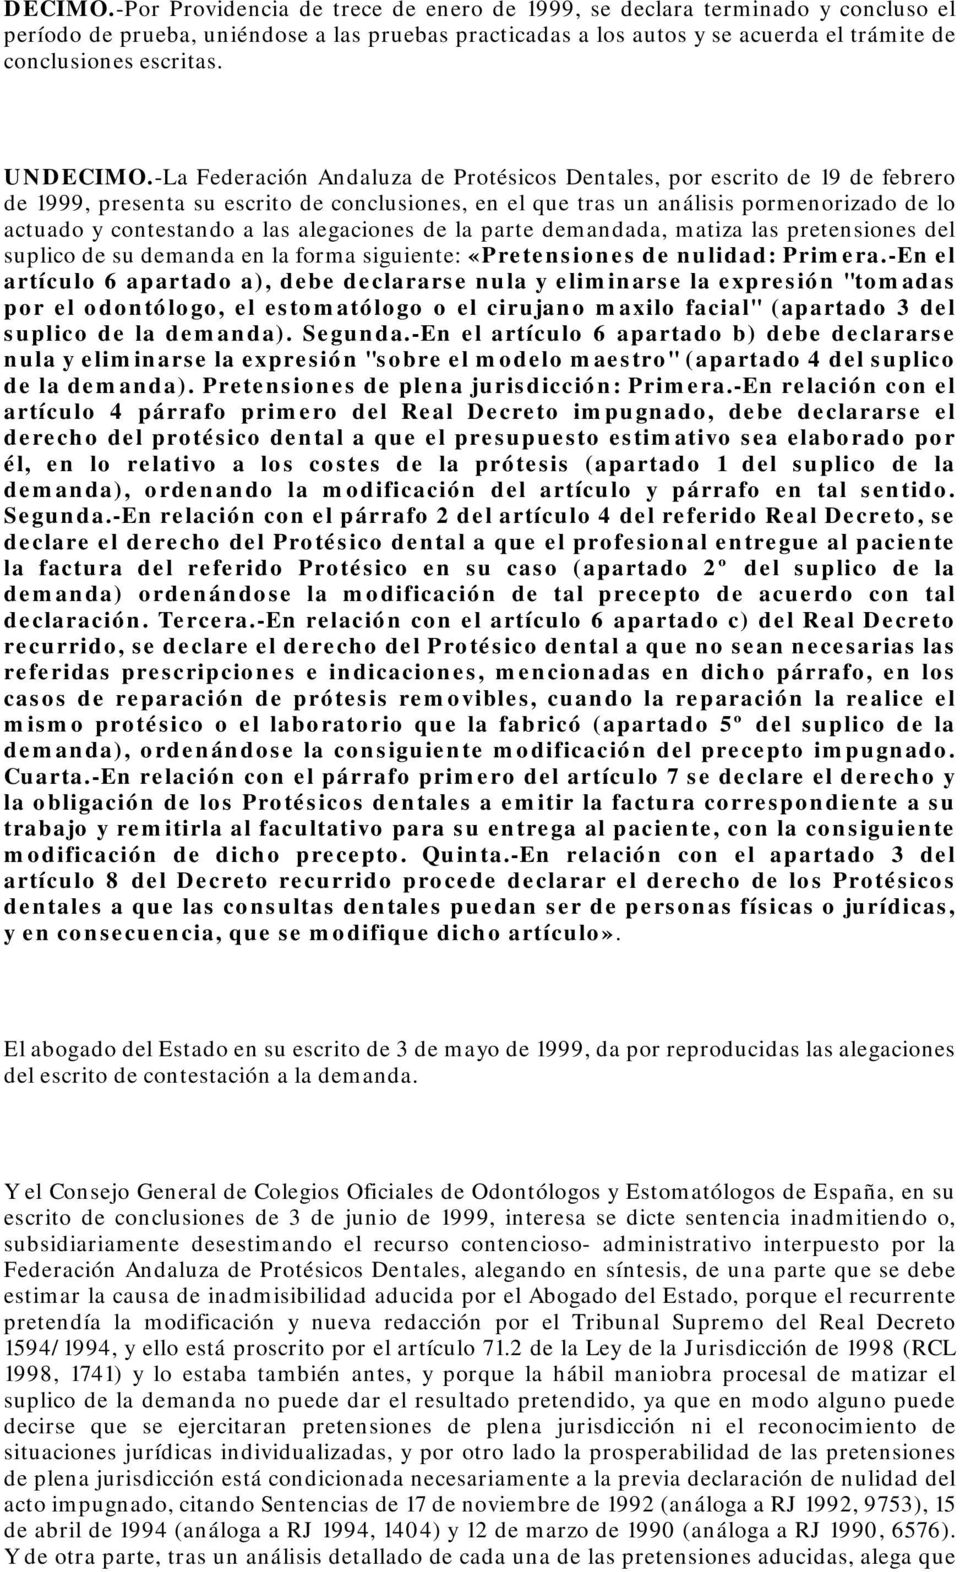 UN-La Federación Andaluza de Protésicos Dentales, por escrito de 19 de febrero de 1999, presenta su escrito de conclusiones, en el que tras un análisis pormenorizado de lo actuado y contestando a las